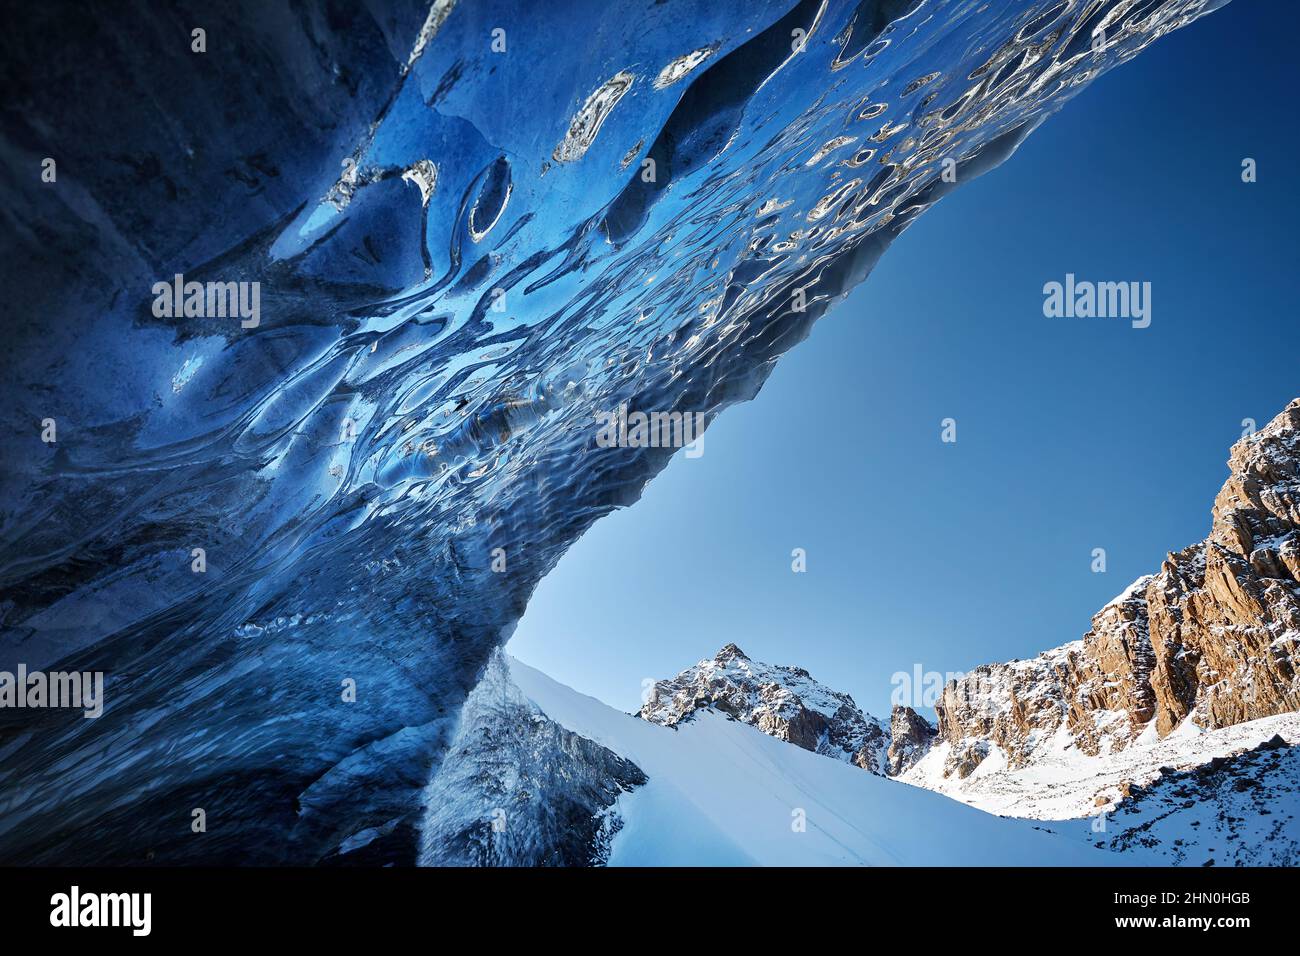 Magnifique paysage de grotte de glace bleue et montagnes couvertes de neige à Almaty, Kazakhstan Banque D'Images